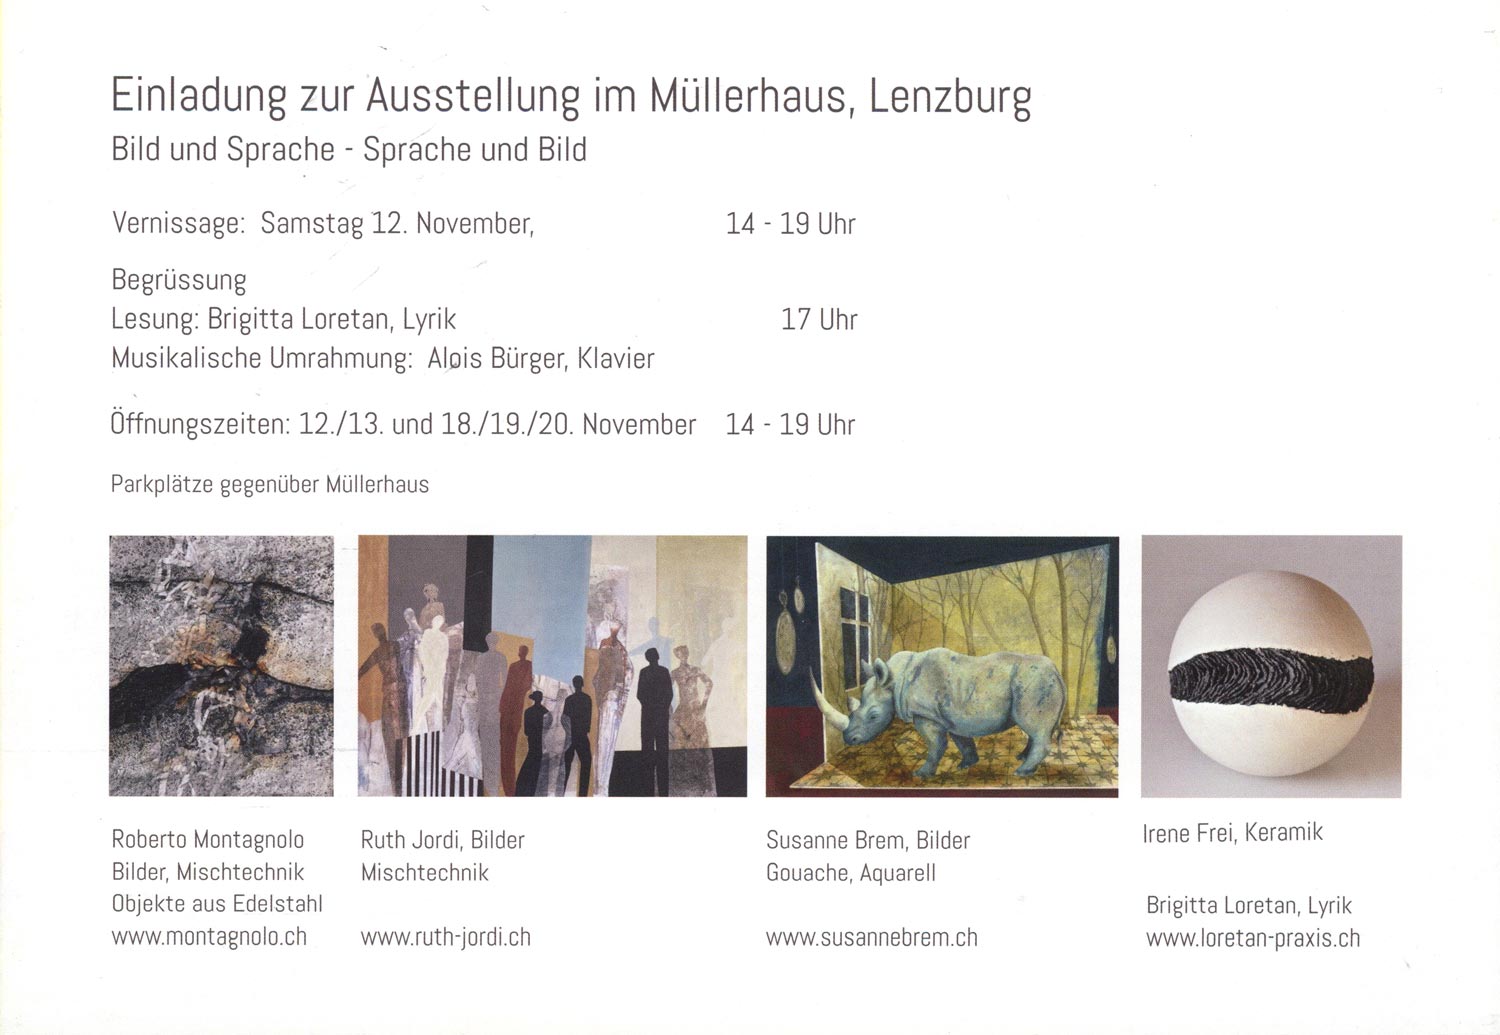 Ausstellung, Kunst, Lenzburg, surreal, Gruppenausstellung Müllerhauslenzburg, Müllerhaus, Bild und Sprache - spräche und Bild